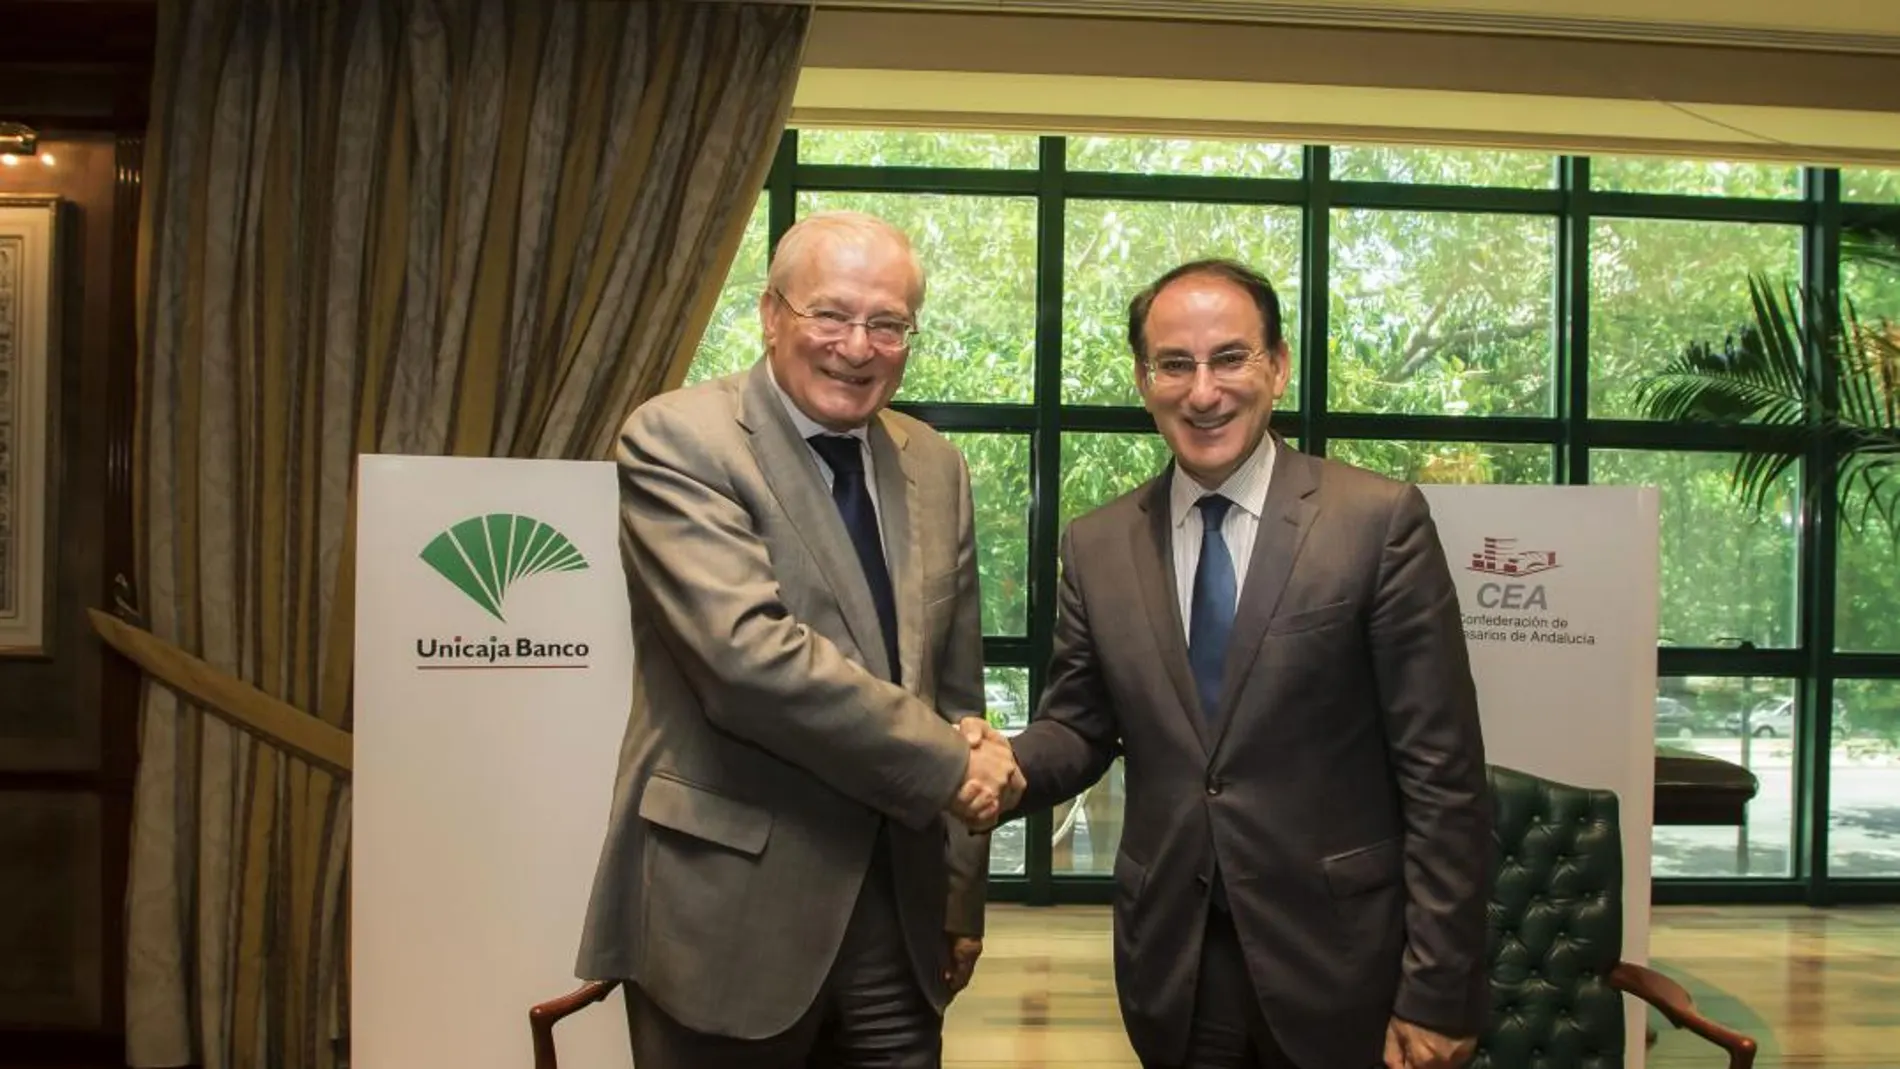 Este nuevo acuerdo de colaboración ha sido firmado por el presidente de Unicaja Banco, Manuel Azuaga, y por el presidente de la CEA, Javier González de Lara